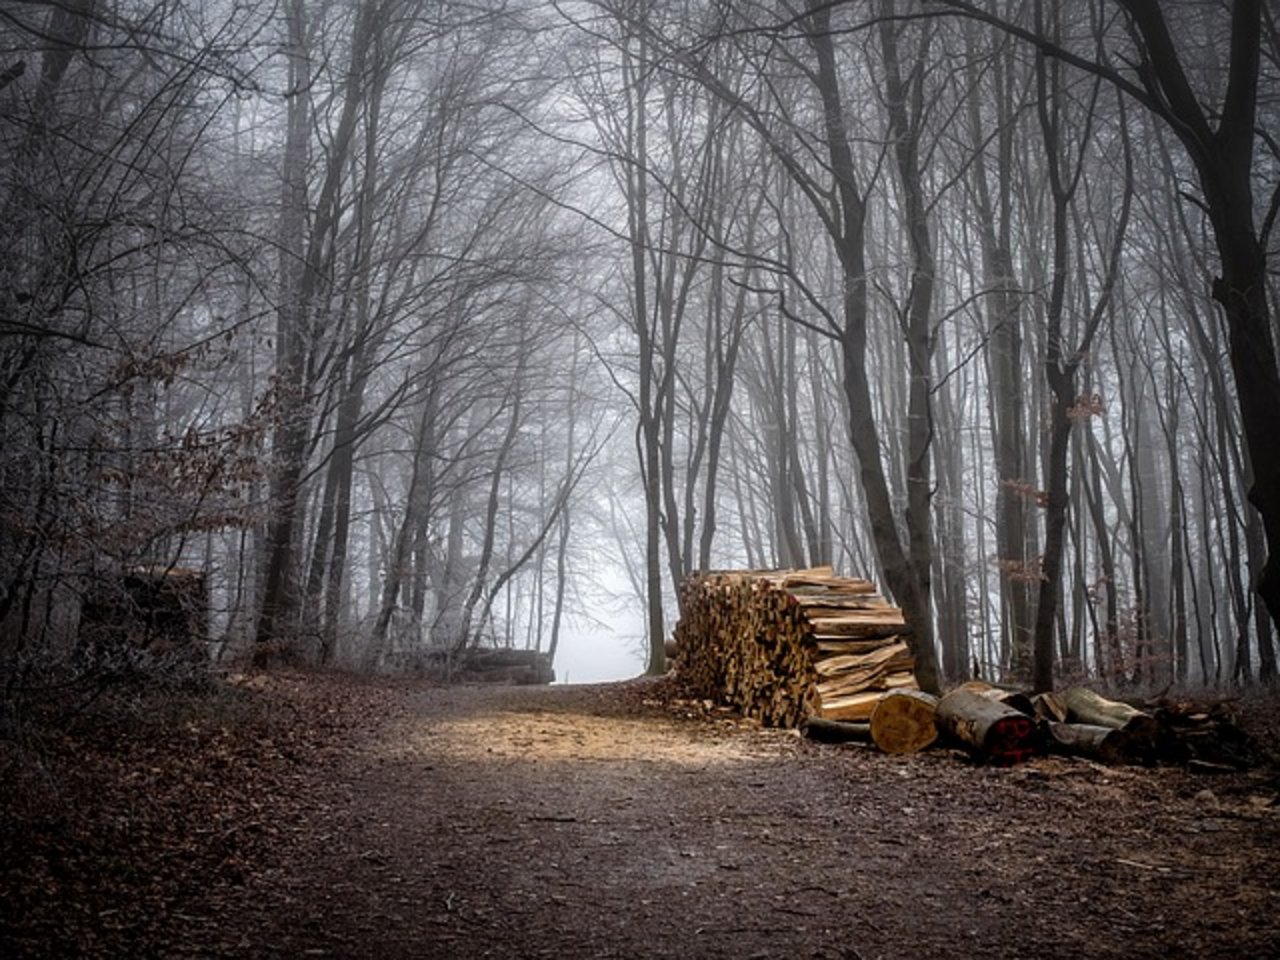 Waldlager mit holz minderer Qualität konnten laut HMK mehrheitlich abgebaut werden. (Bild Pixabay)